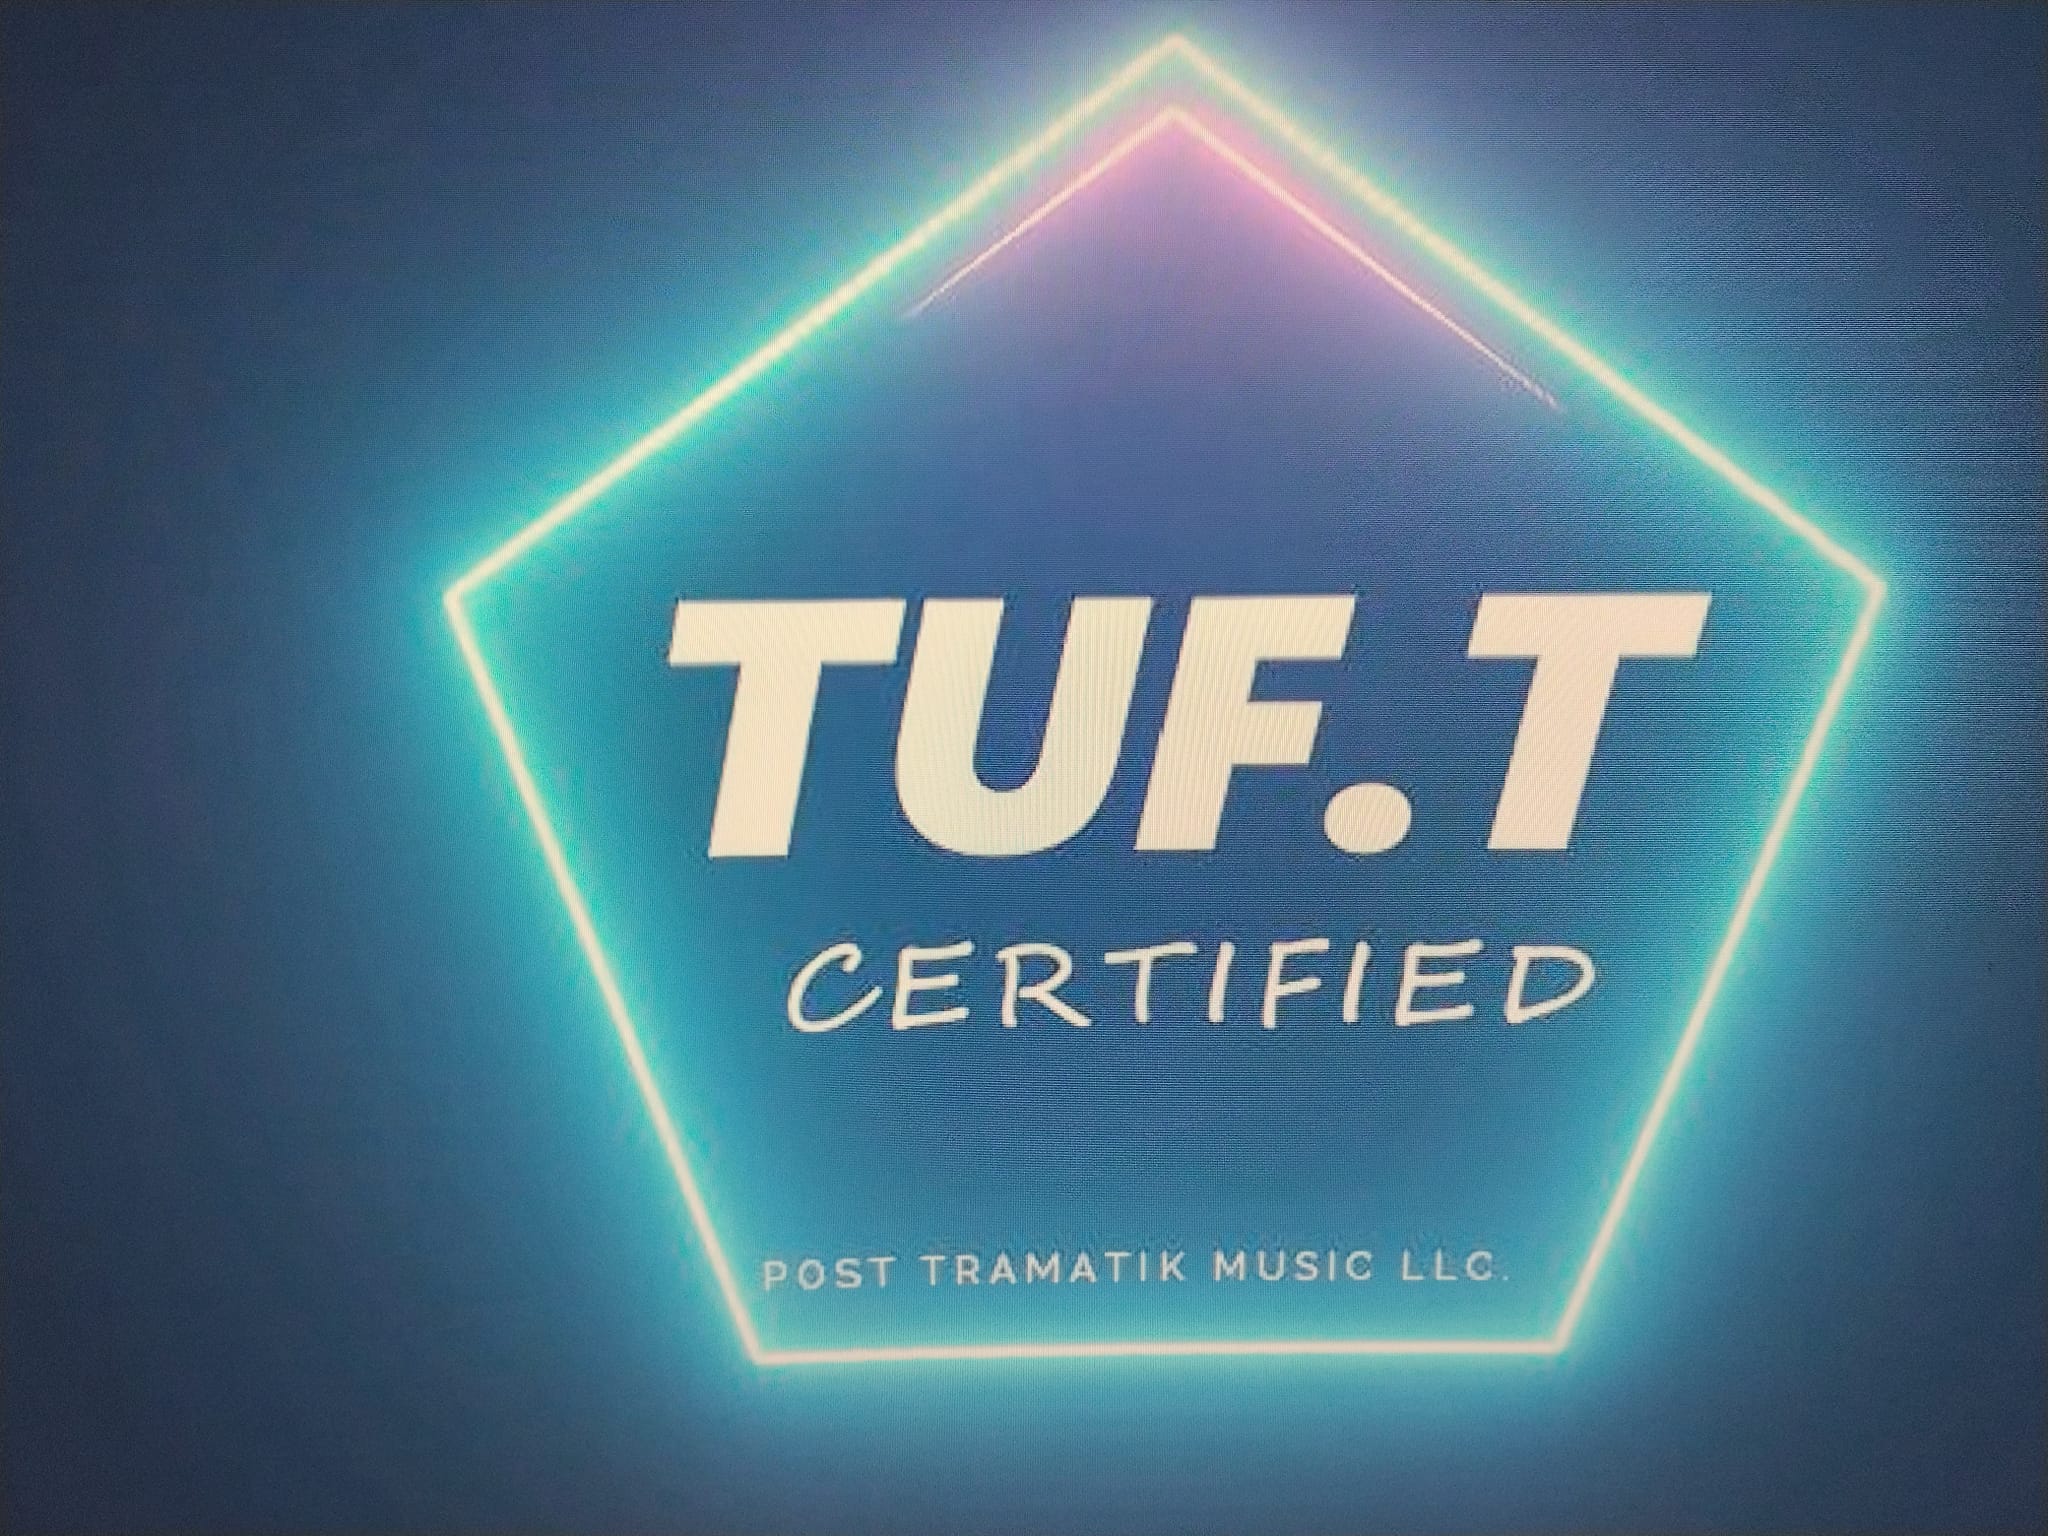 TuF.T Certified Official Website, Listen, Merch, Tours